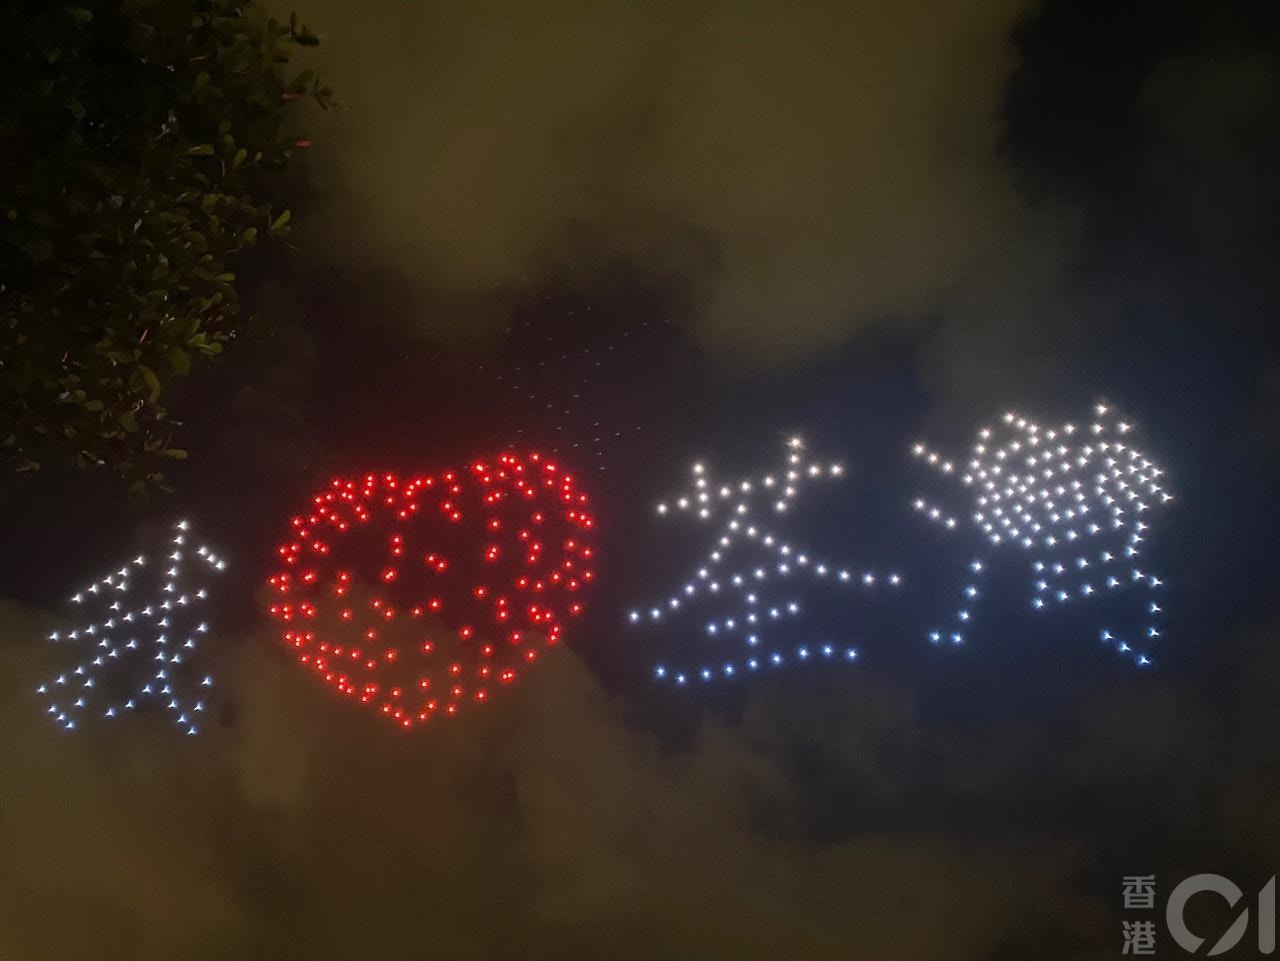 荃湾各界庆祝回归委员会于7月1日晚上8时50分上映「无人机汇演贺回归」，砌出不同图案。（余月明摄）